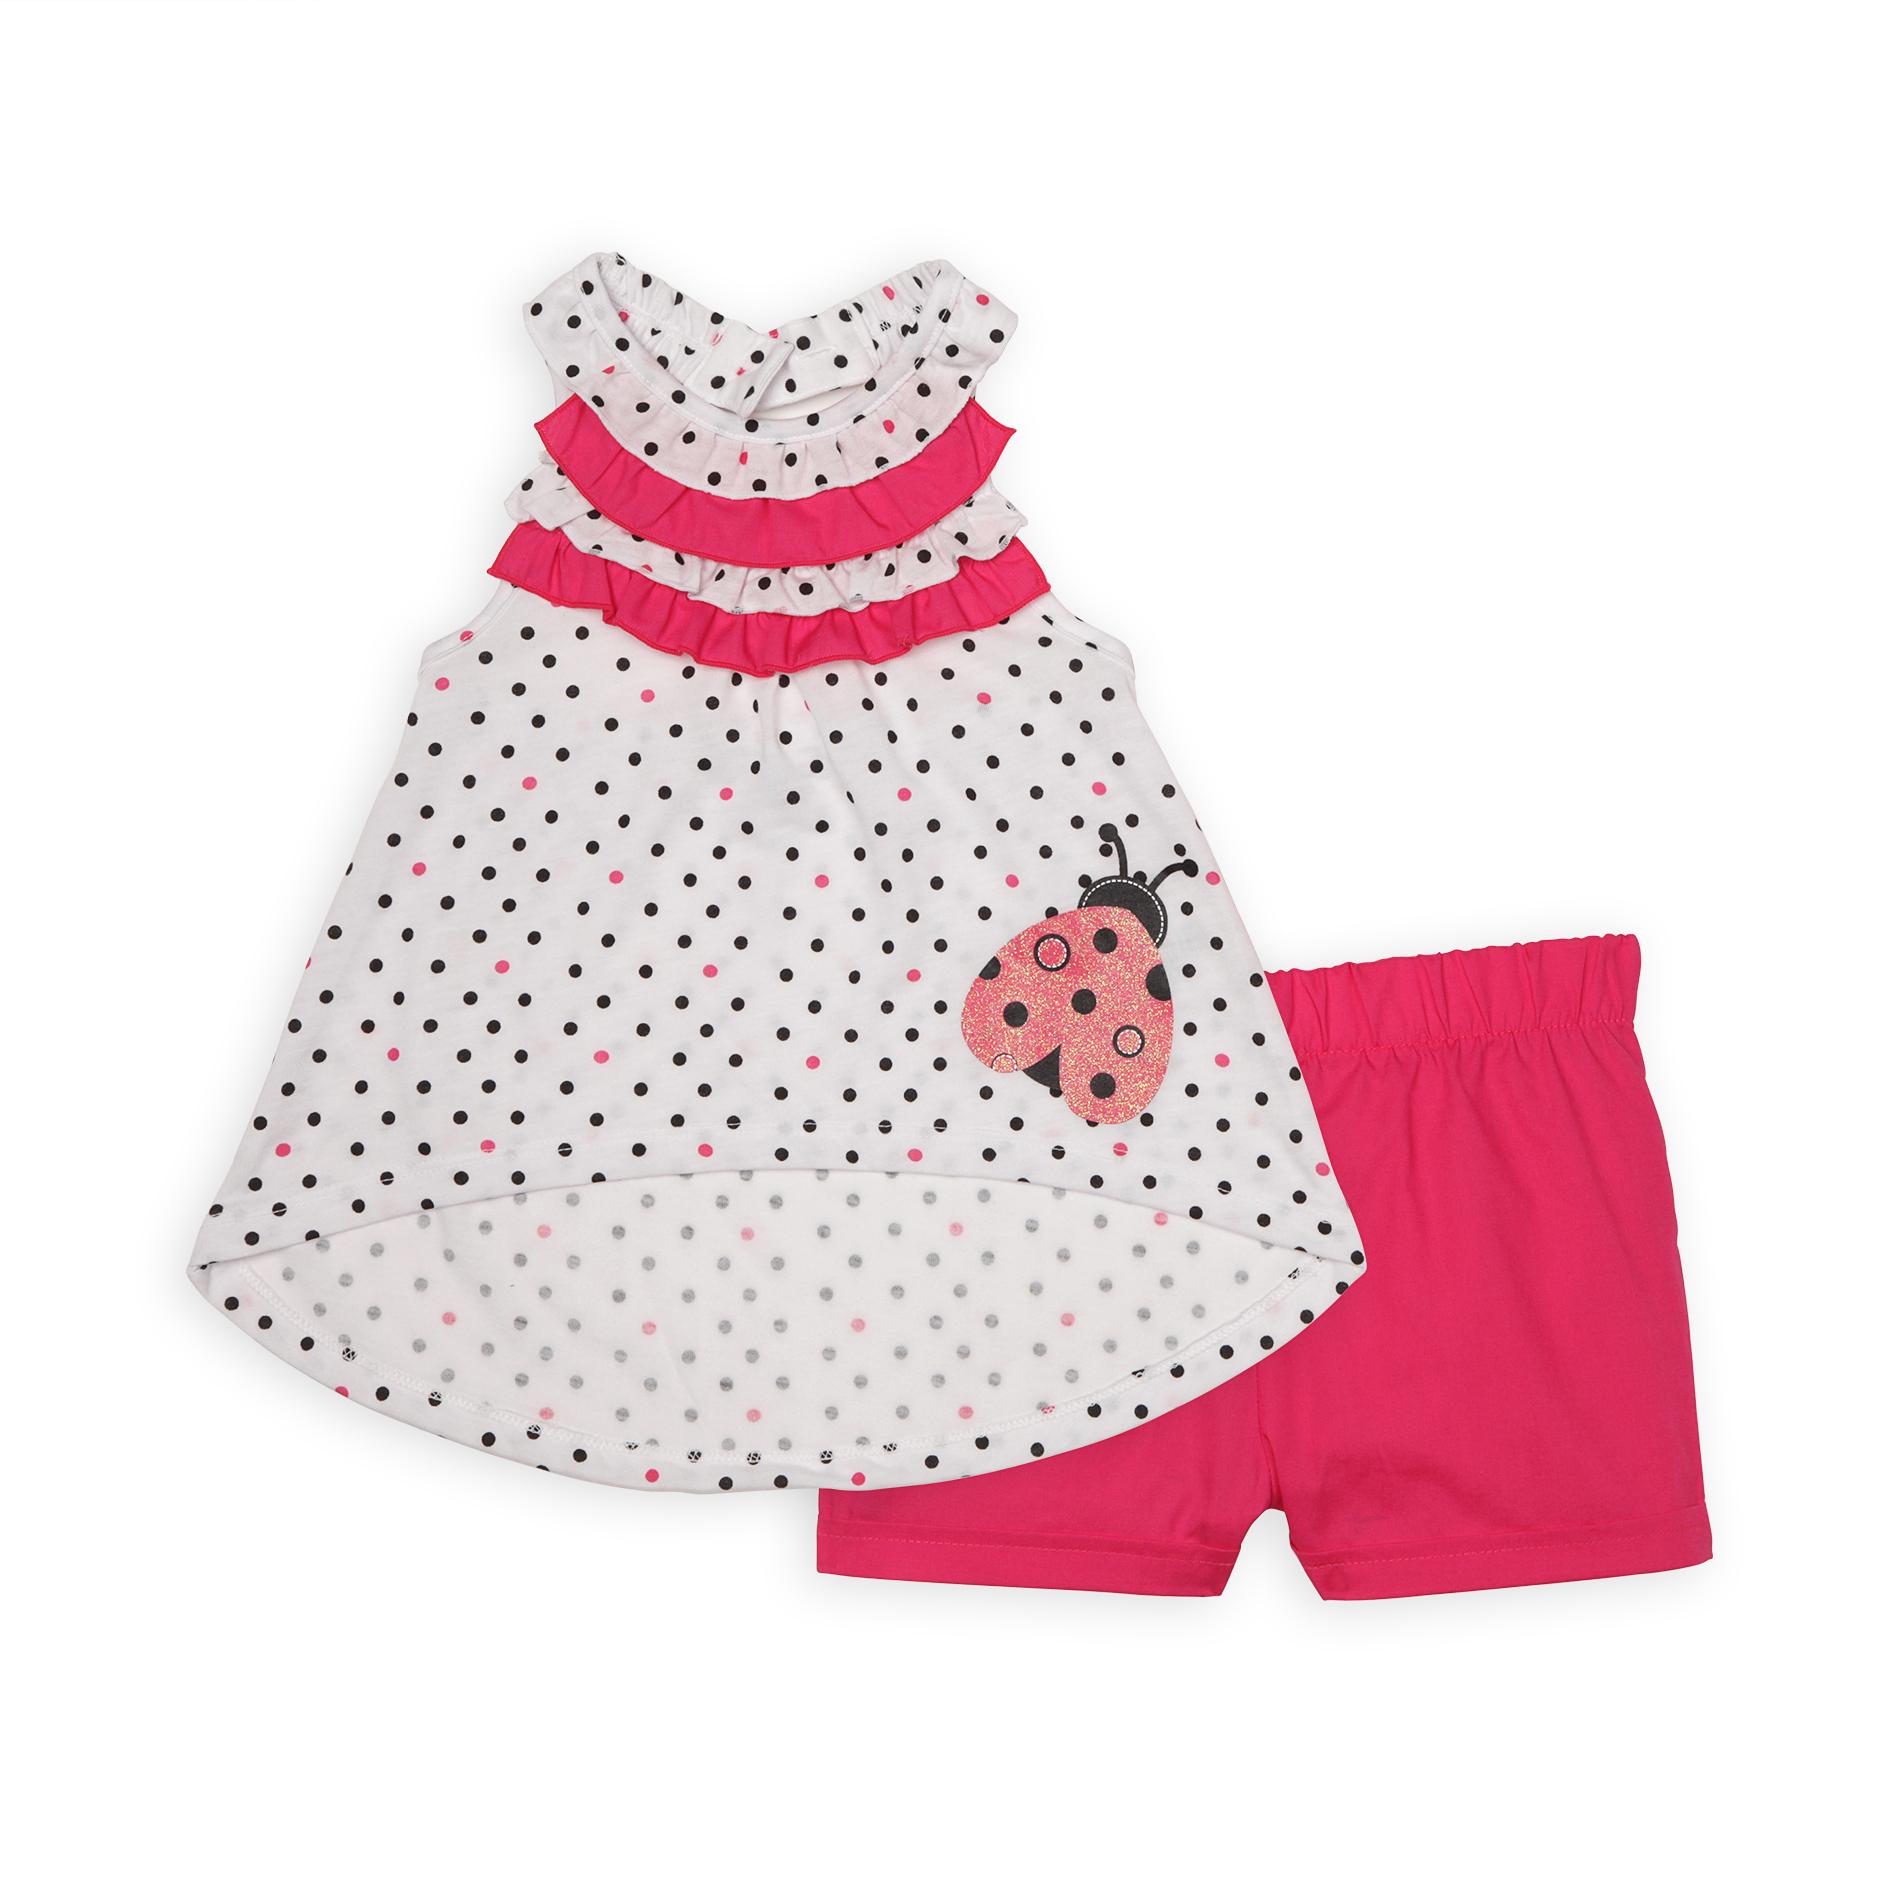 WonderKids Infant & Toddler Girl's Sleeveless Dress & Shorts - Polka Dot